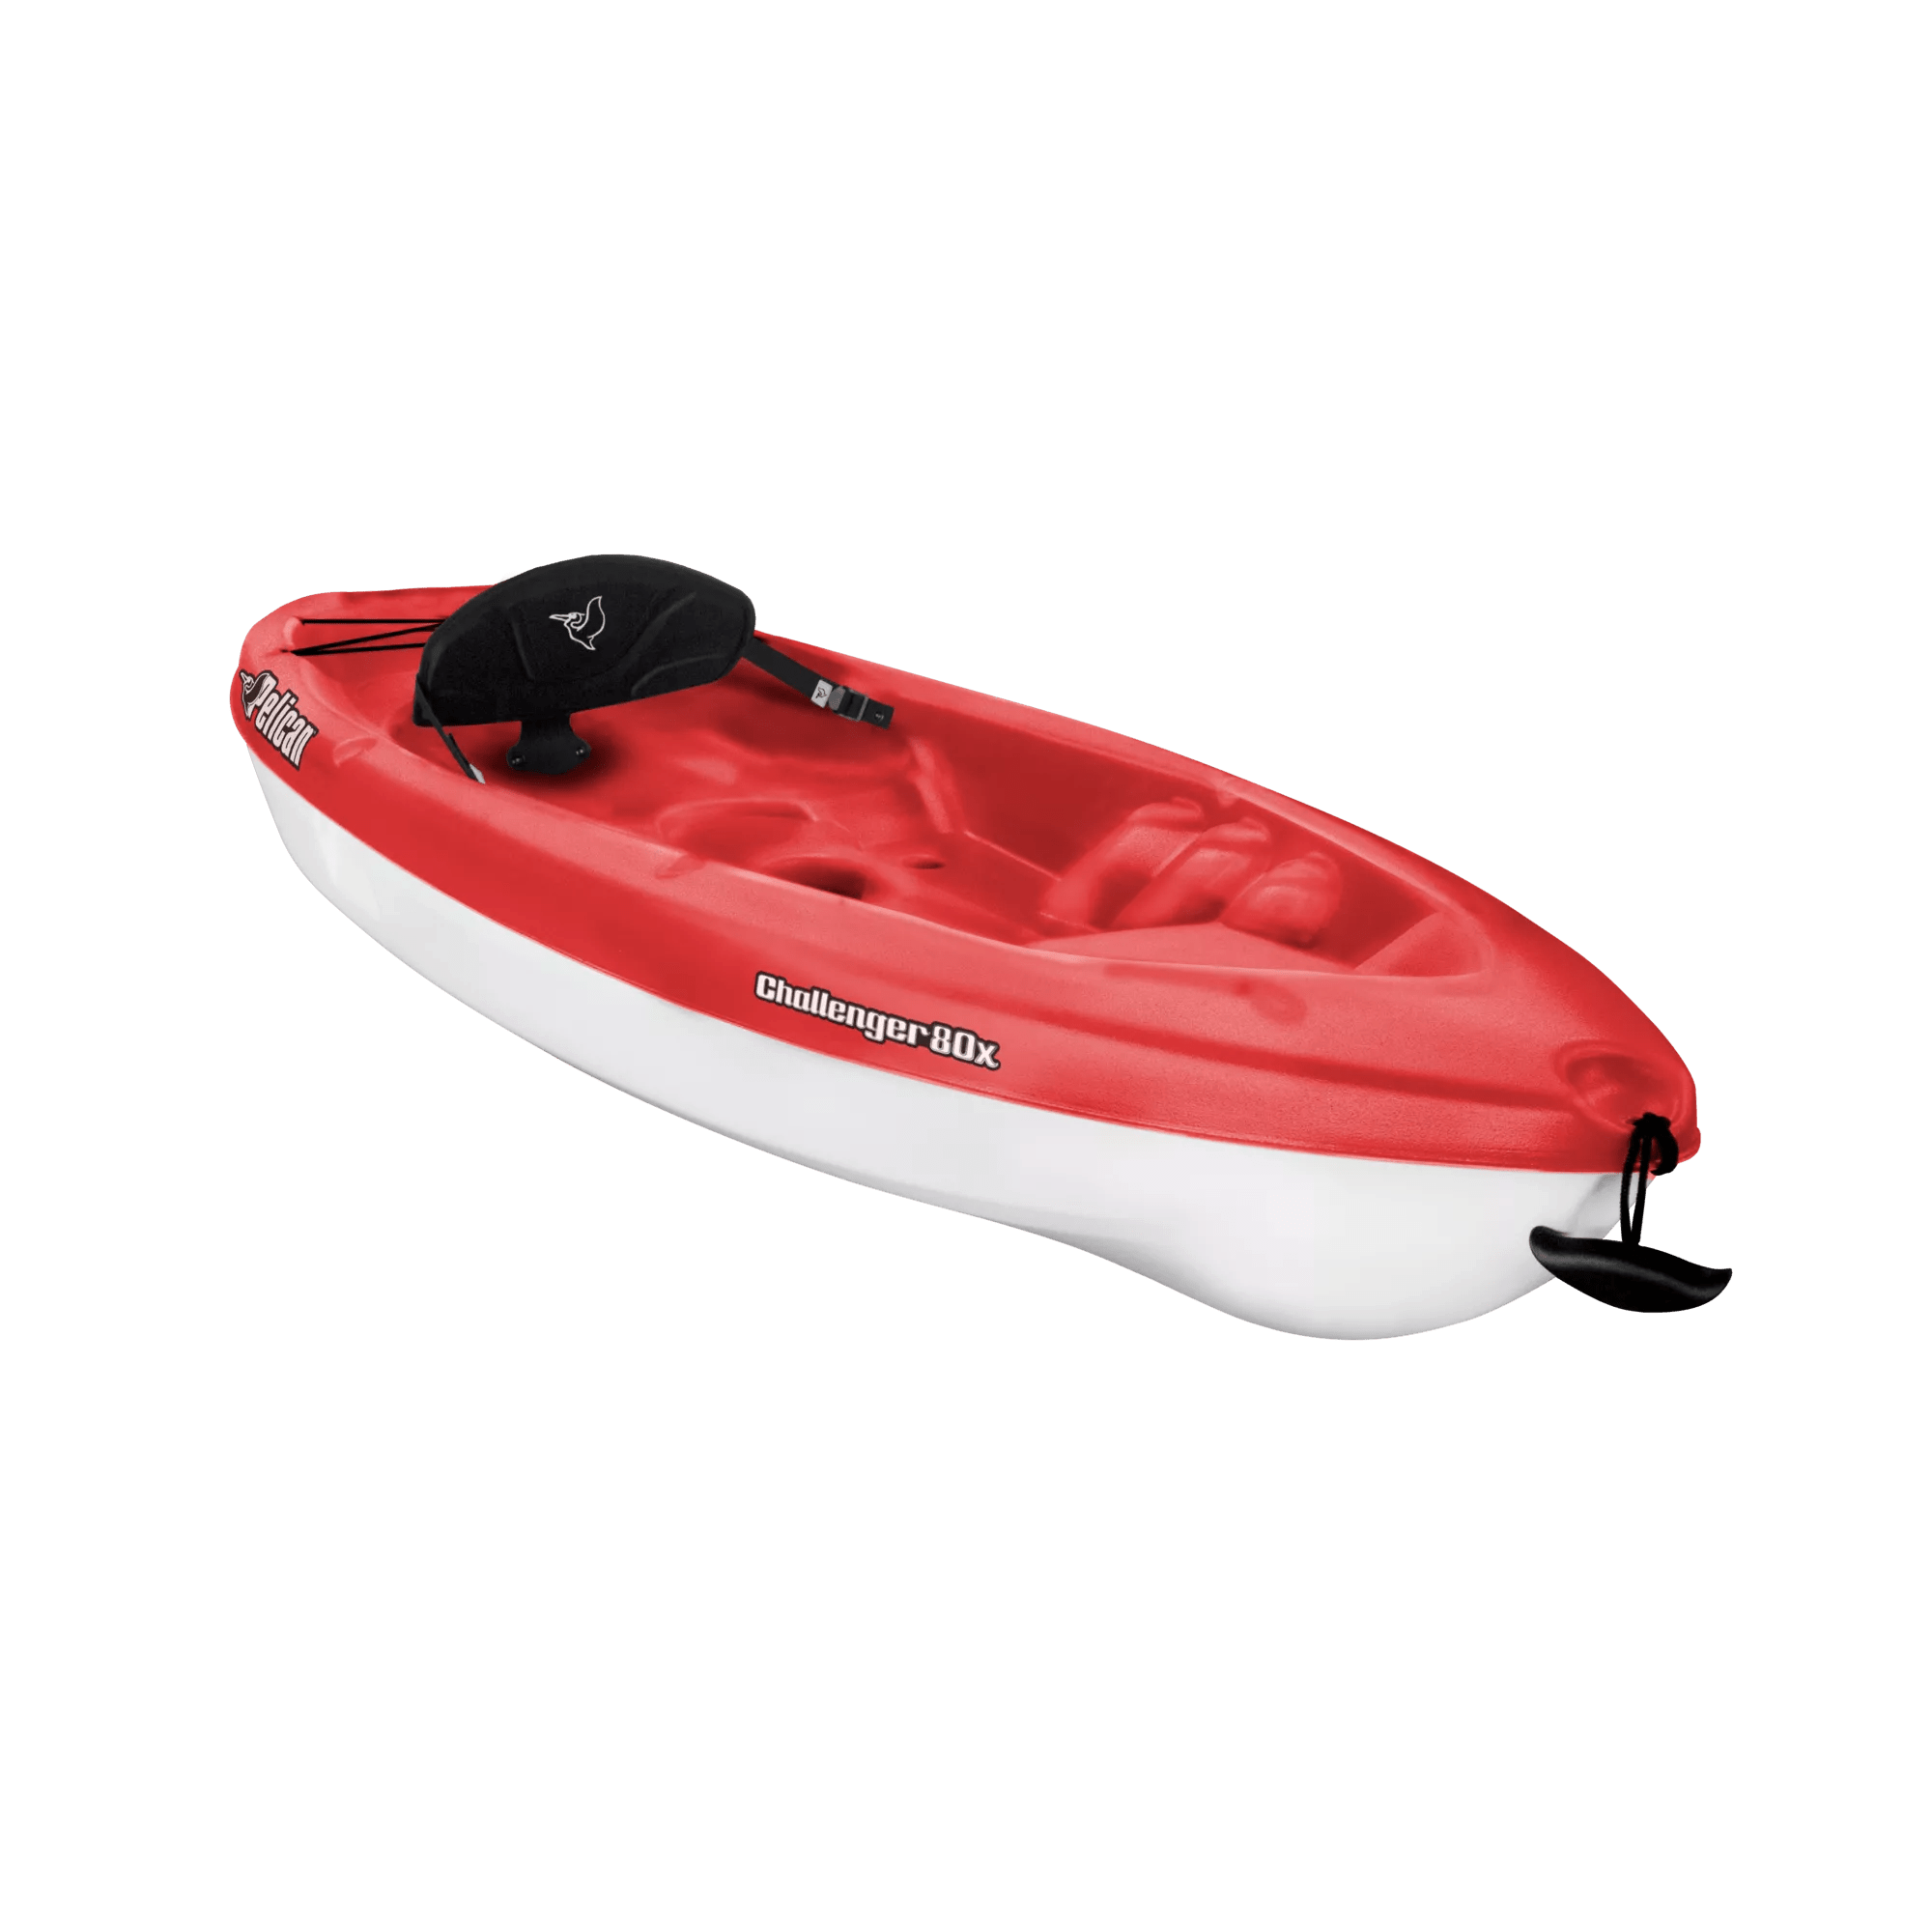 PELICAN - Challenger 80X Recreational Kayak - Red - KVA08P103 - ISO